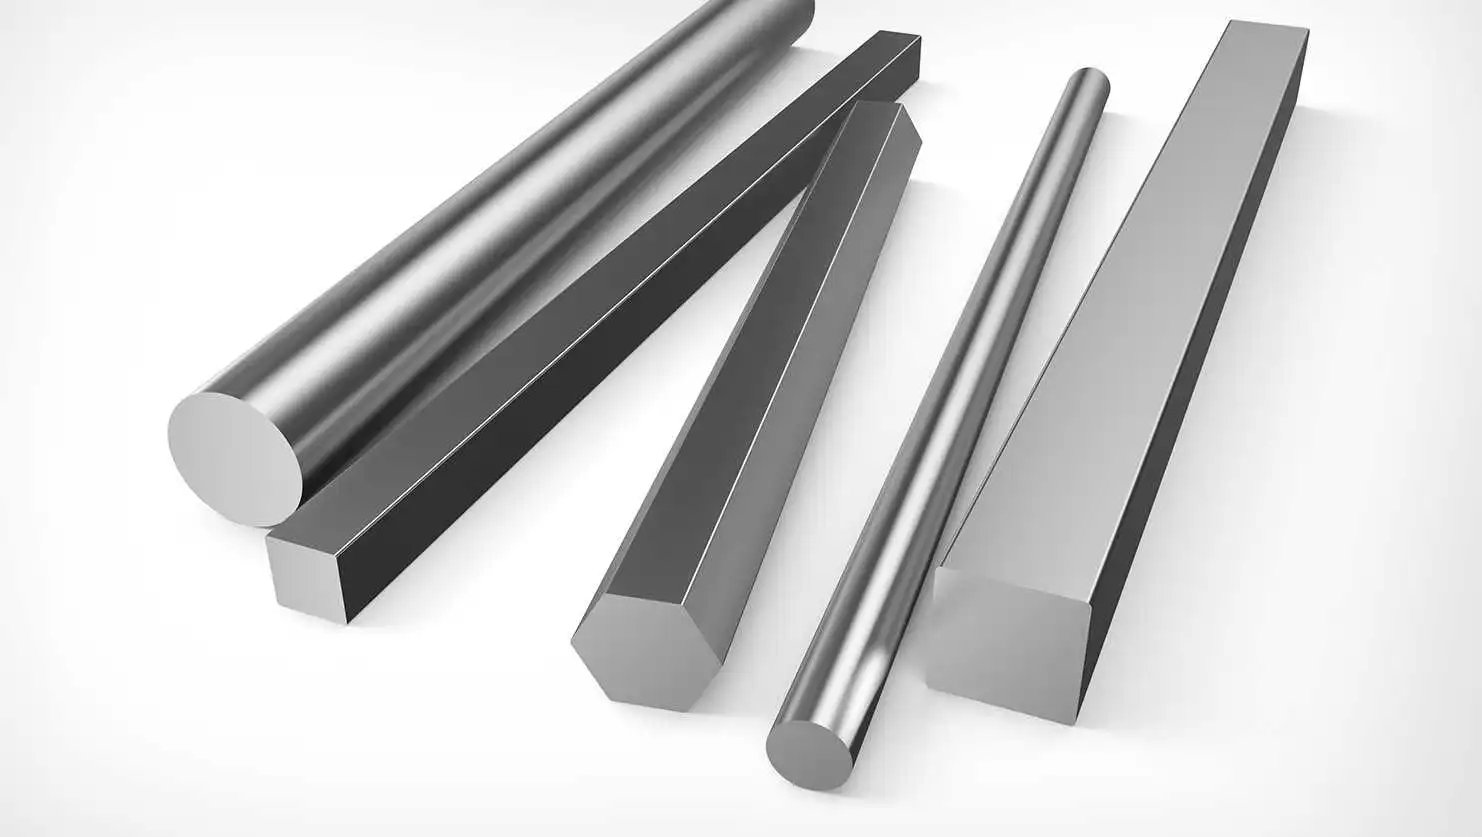 Plus Metals - Udimet X750 Round Bar Suppliers in India